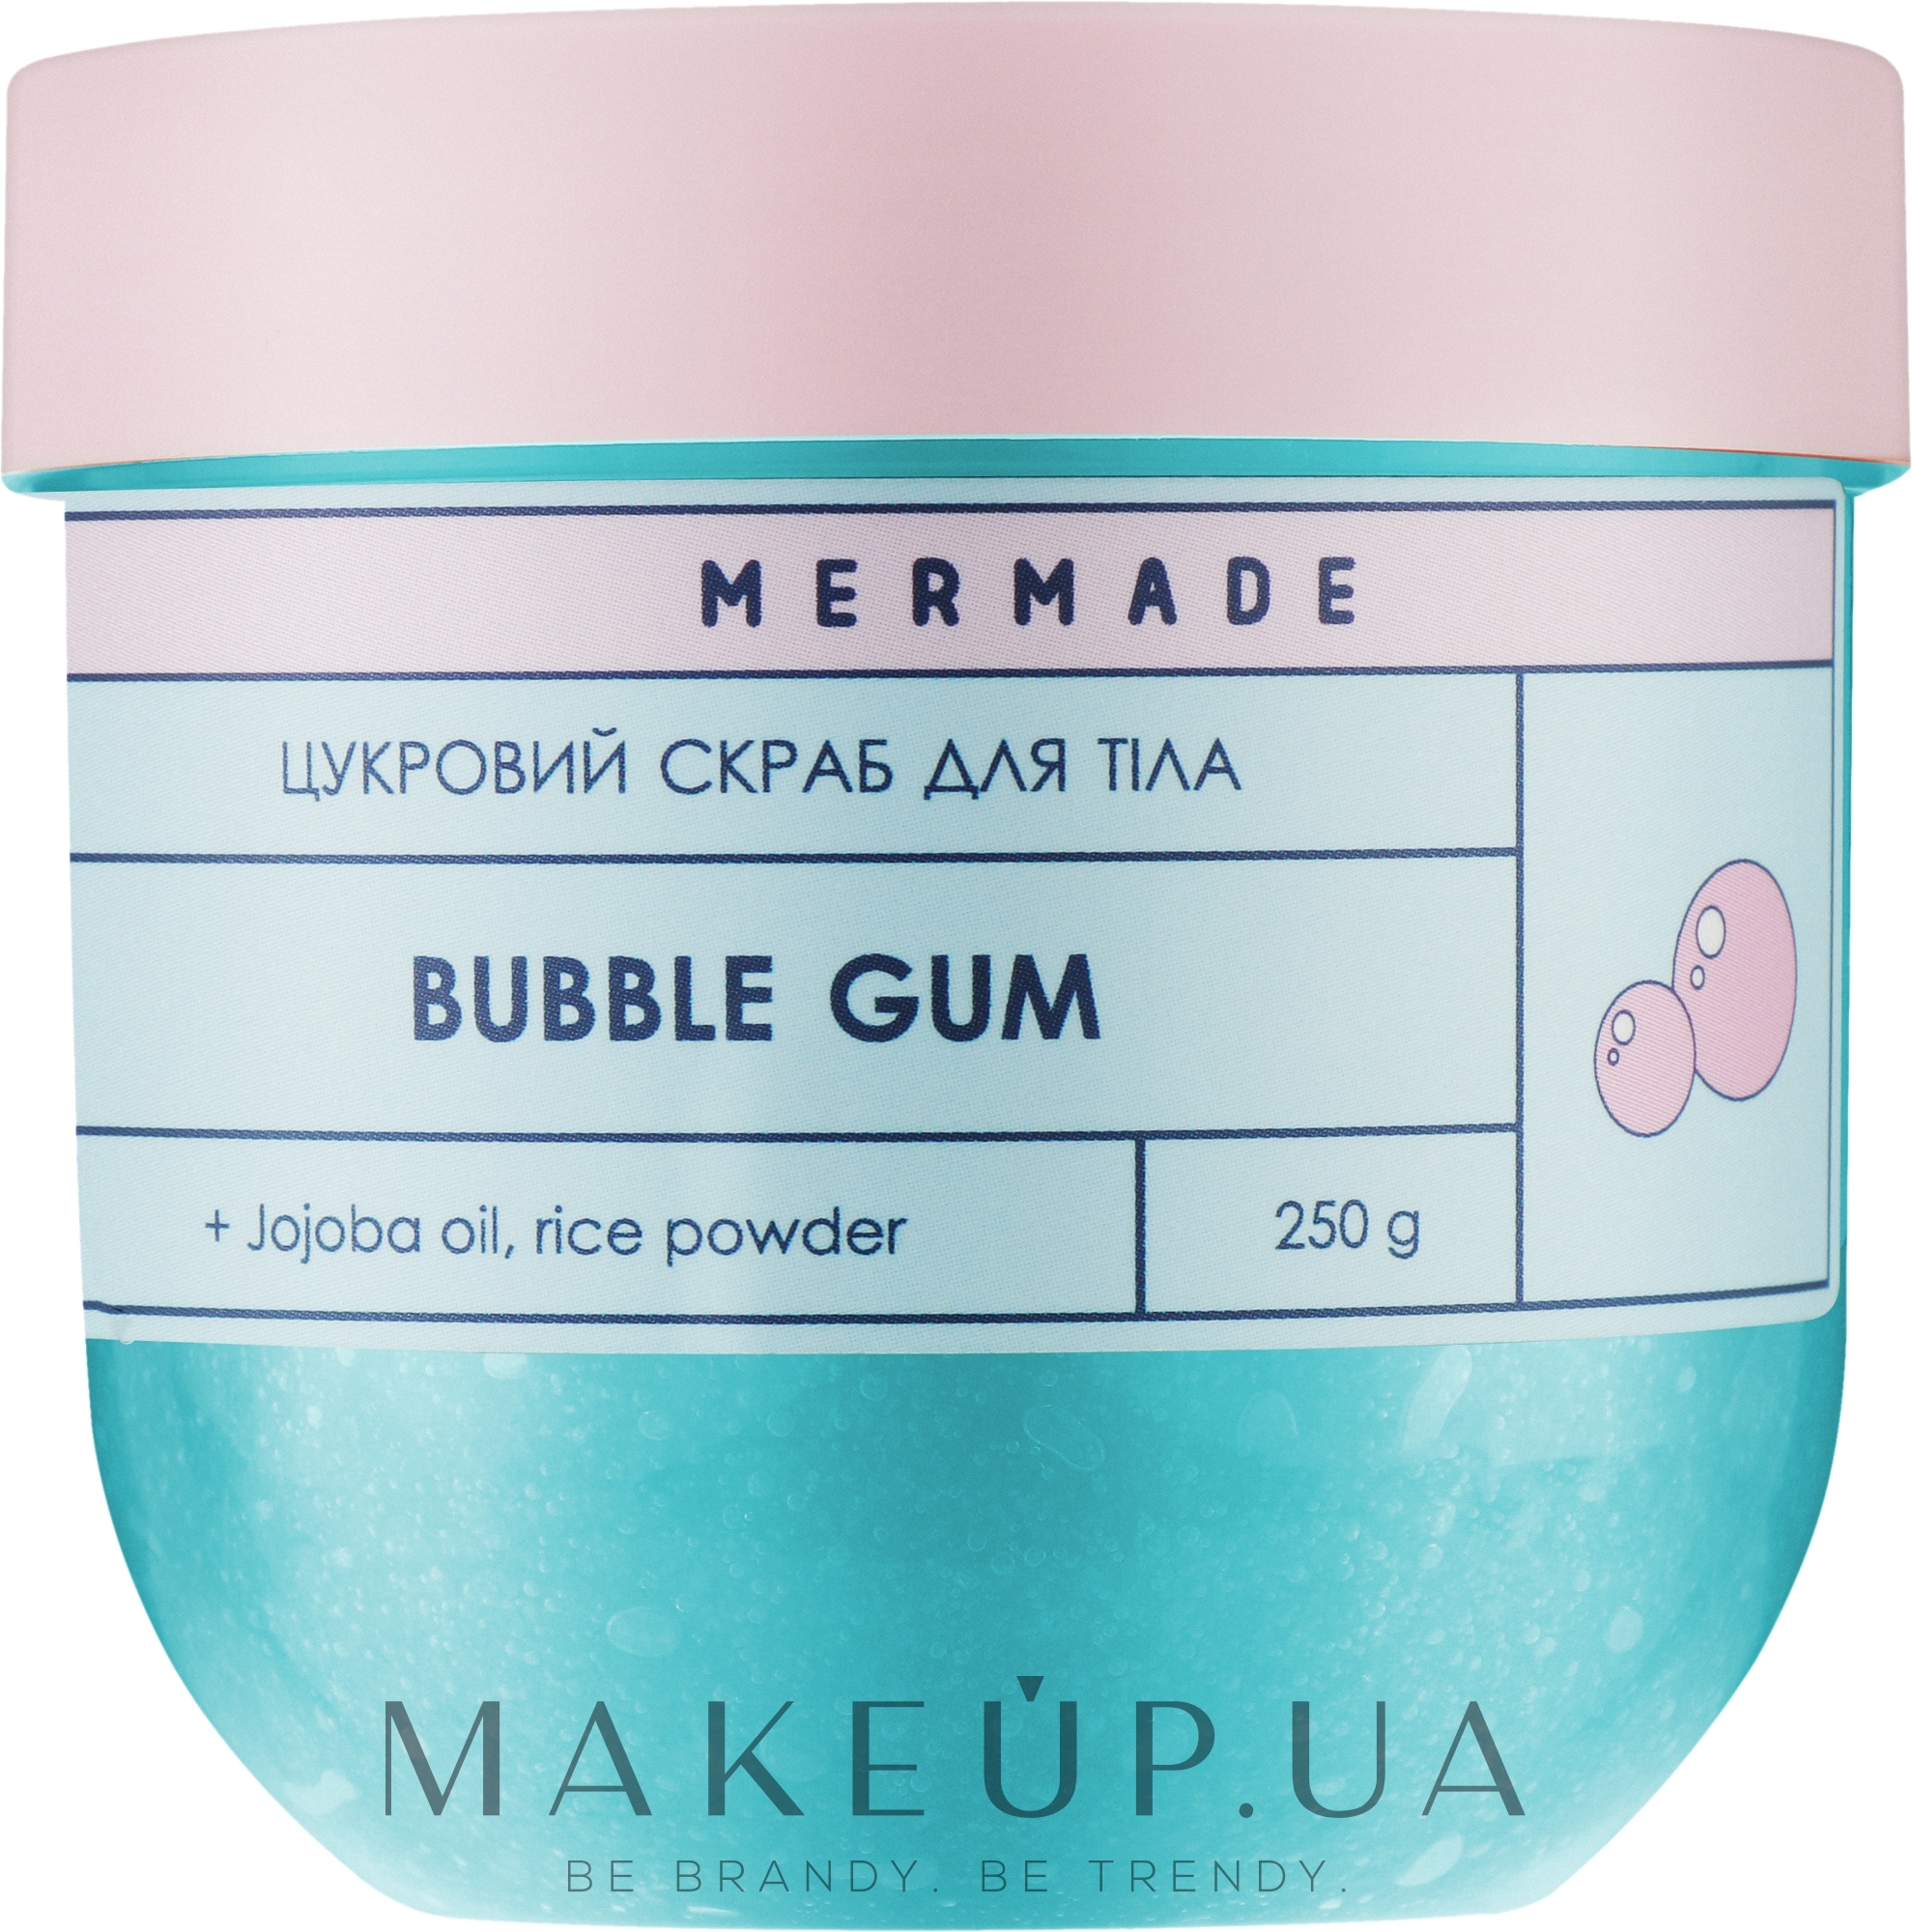 Цукровий скраб для тіла - Mermade Bubble Gum — фото 250g